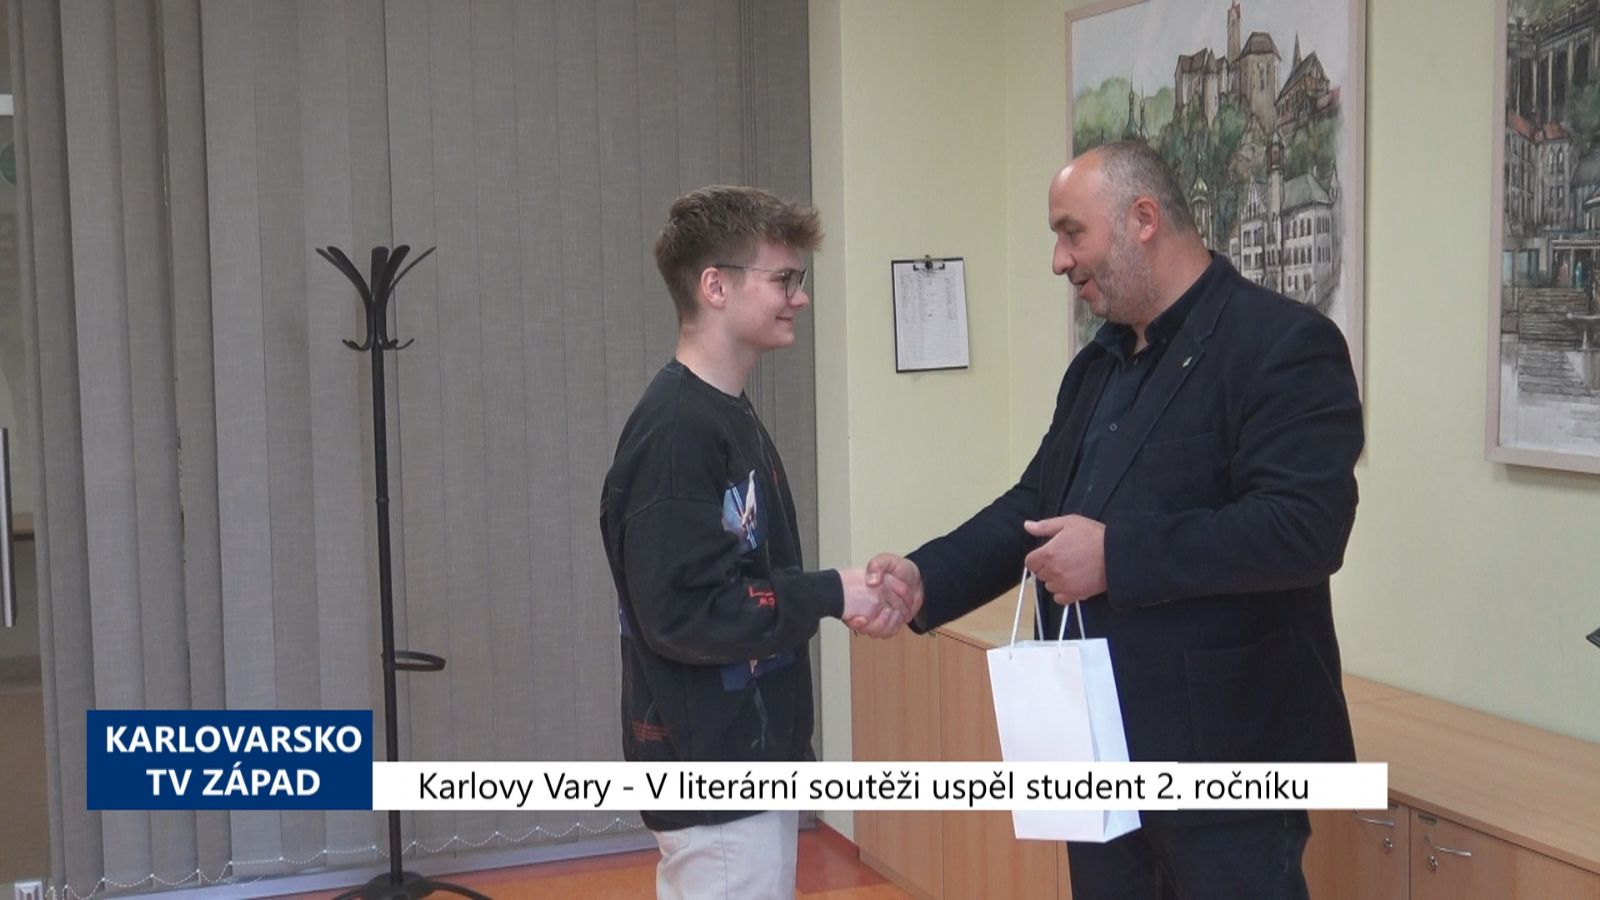 Karlovy Vary: V literární soutěži uspěl student 2. ročníku (TV Západ)